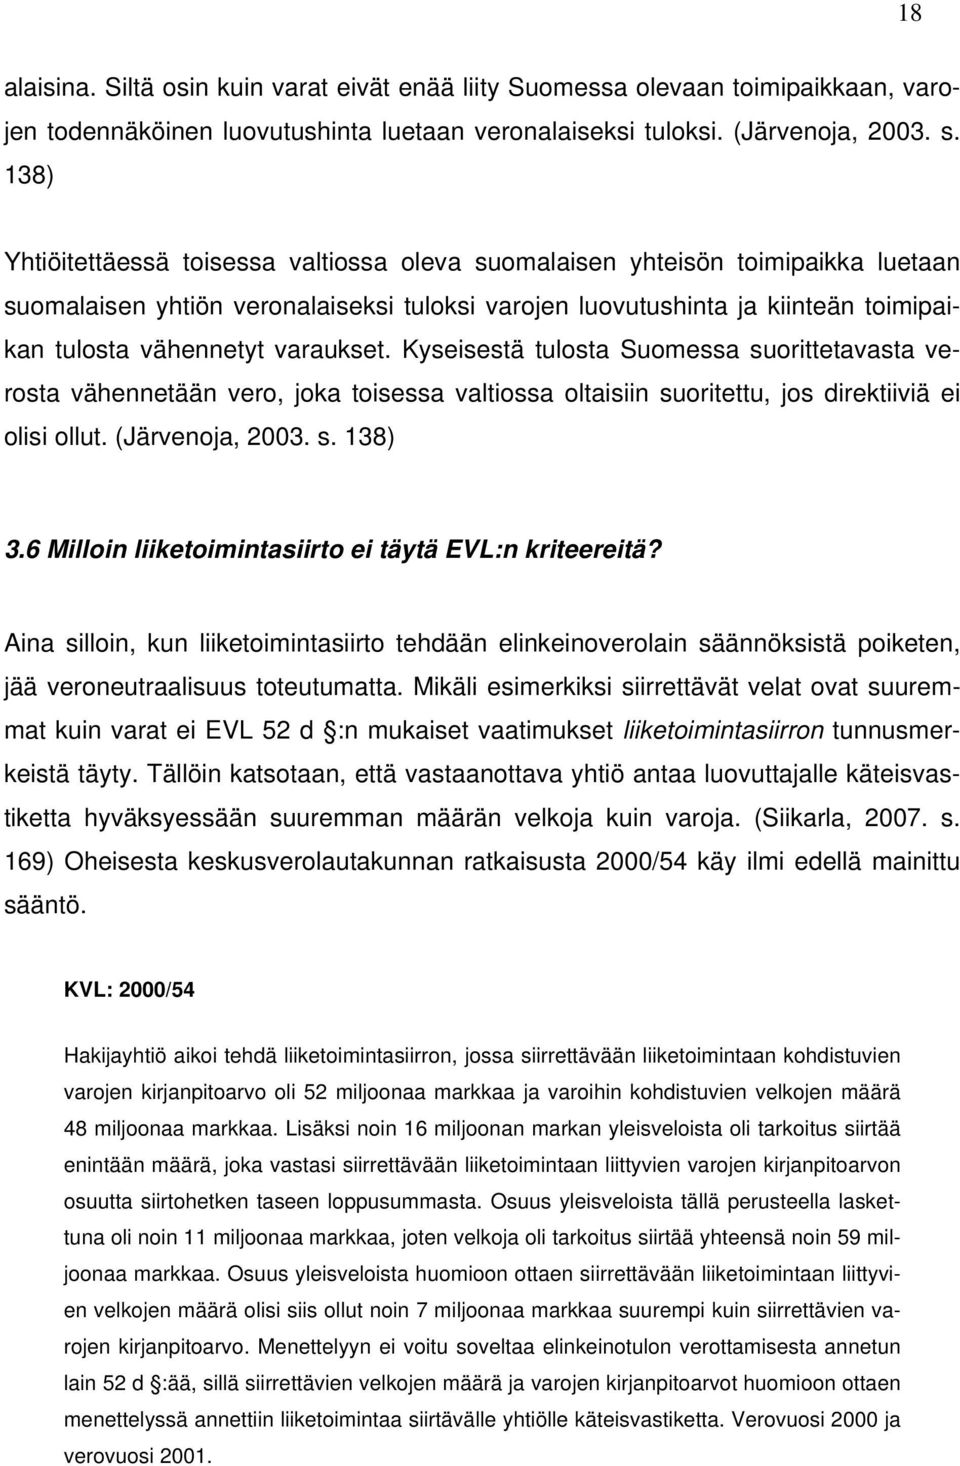 varaukset. Kyseisestä tulosta Suomessa suorittetavasta verosta vähennetään vero, joka toisessa valtiossa oltaisiin suoritettu, jos direktiiviä ei olisi ollut. (Järvenoja, 2003. s. 138) 3.